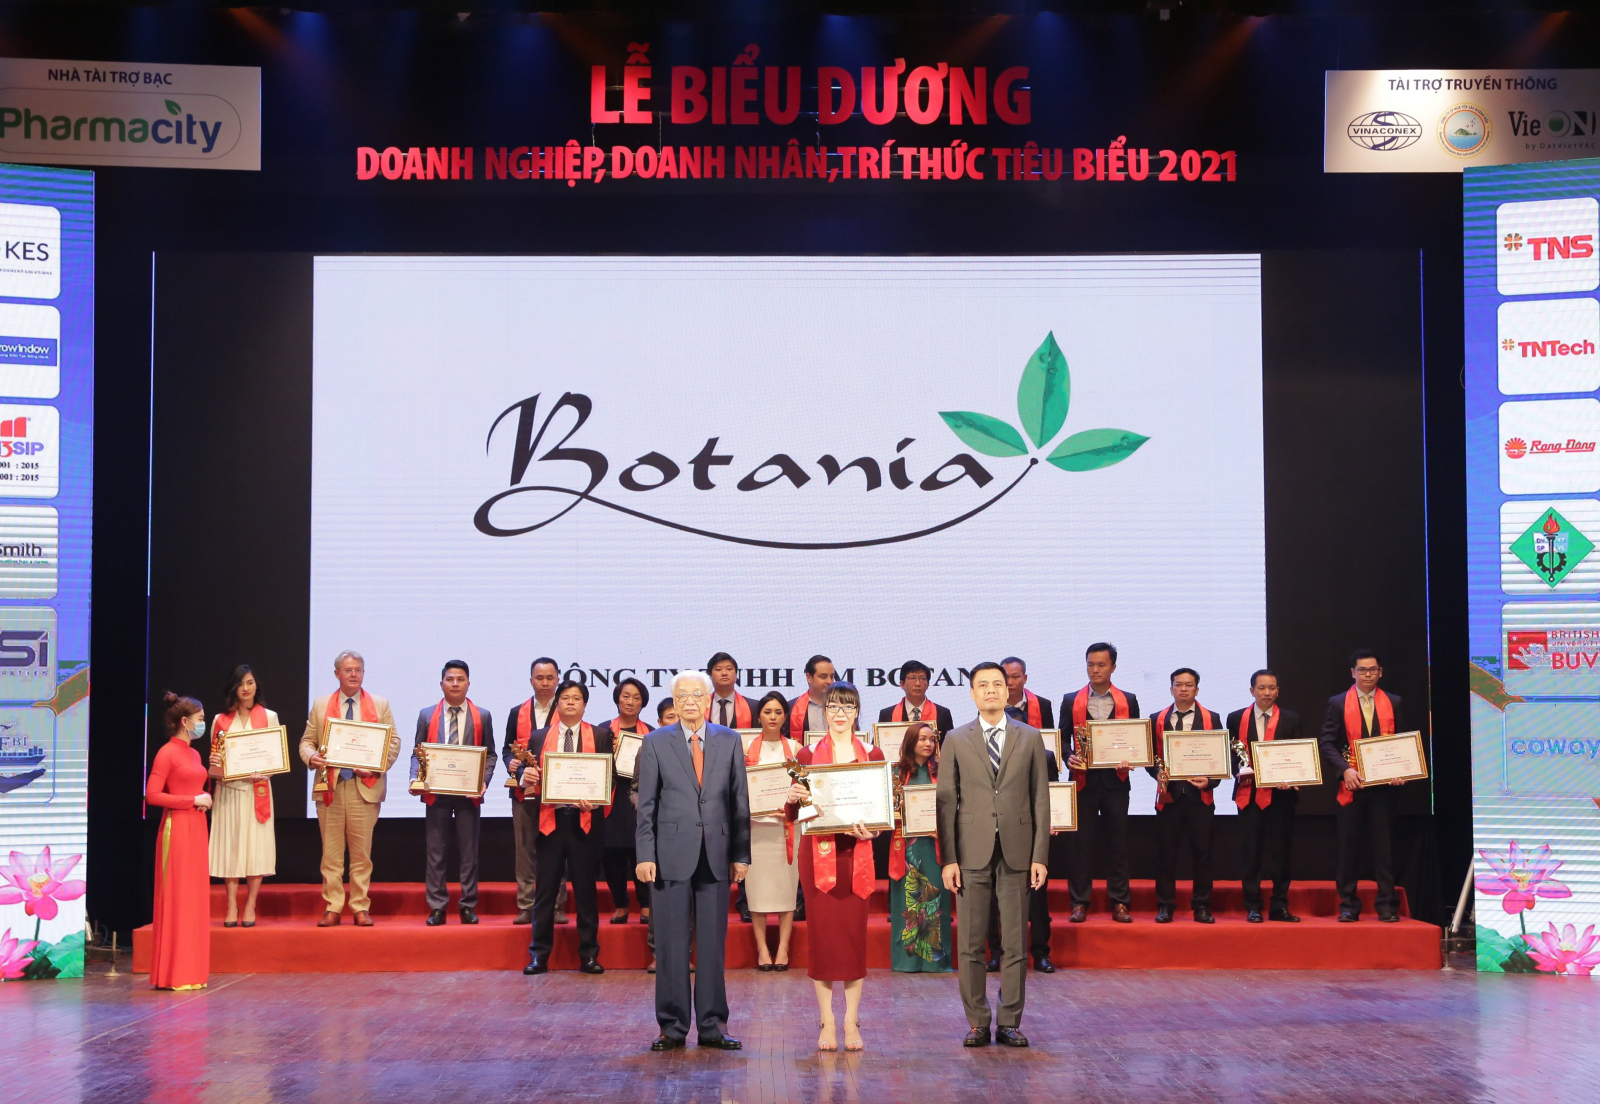 công ty Botania đã vinh dự nhận giải thưởng Top 10 Thương hiệu được tin dùng nhất Việt Nam.